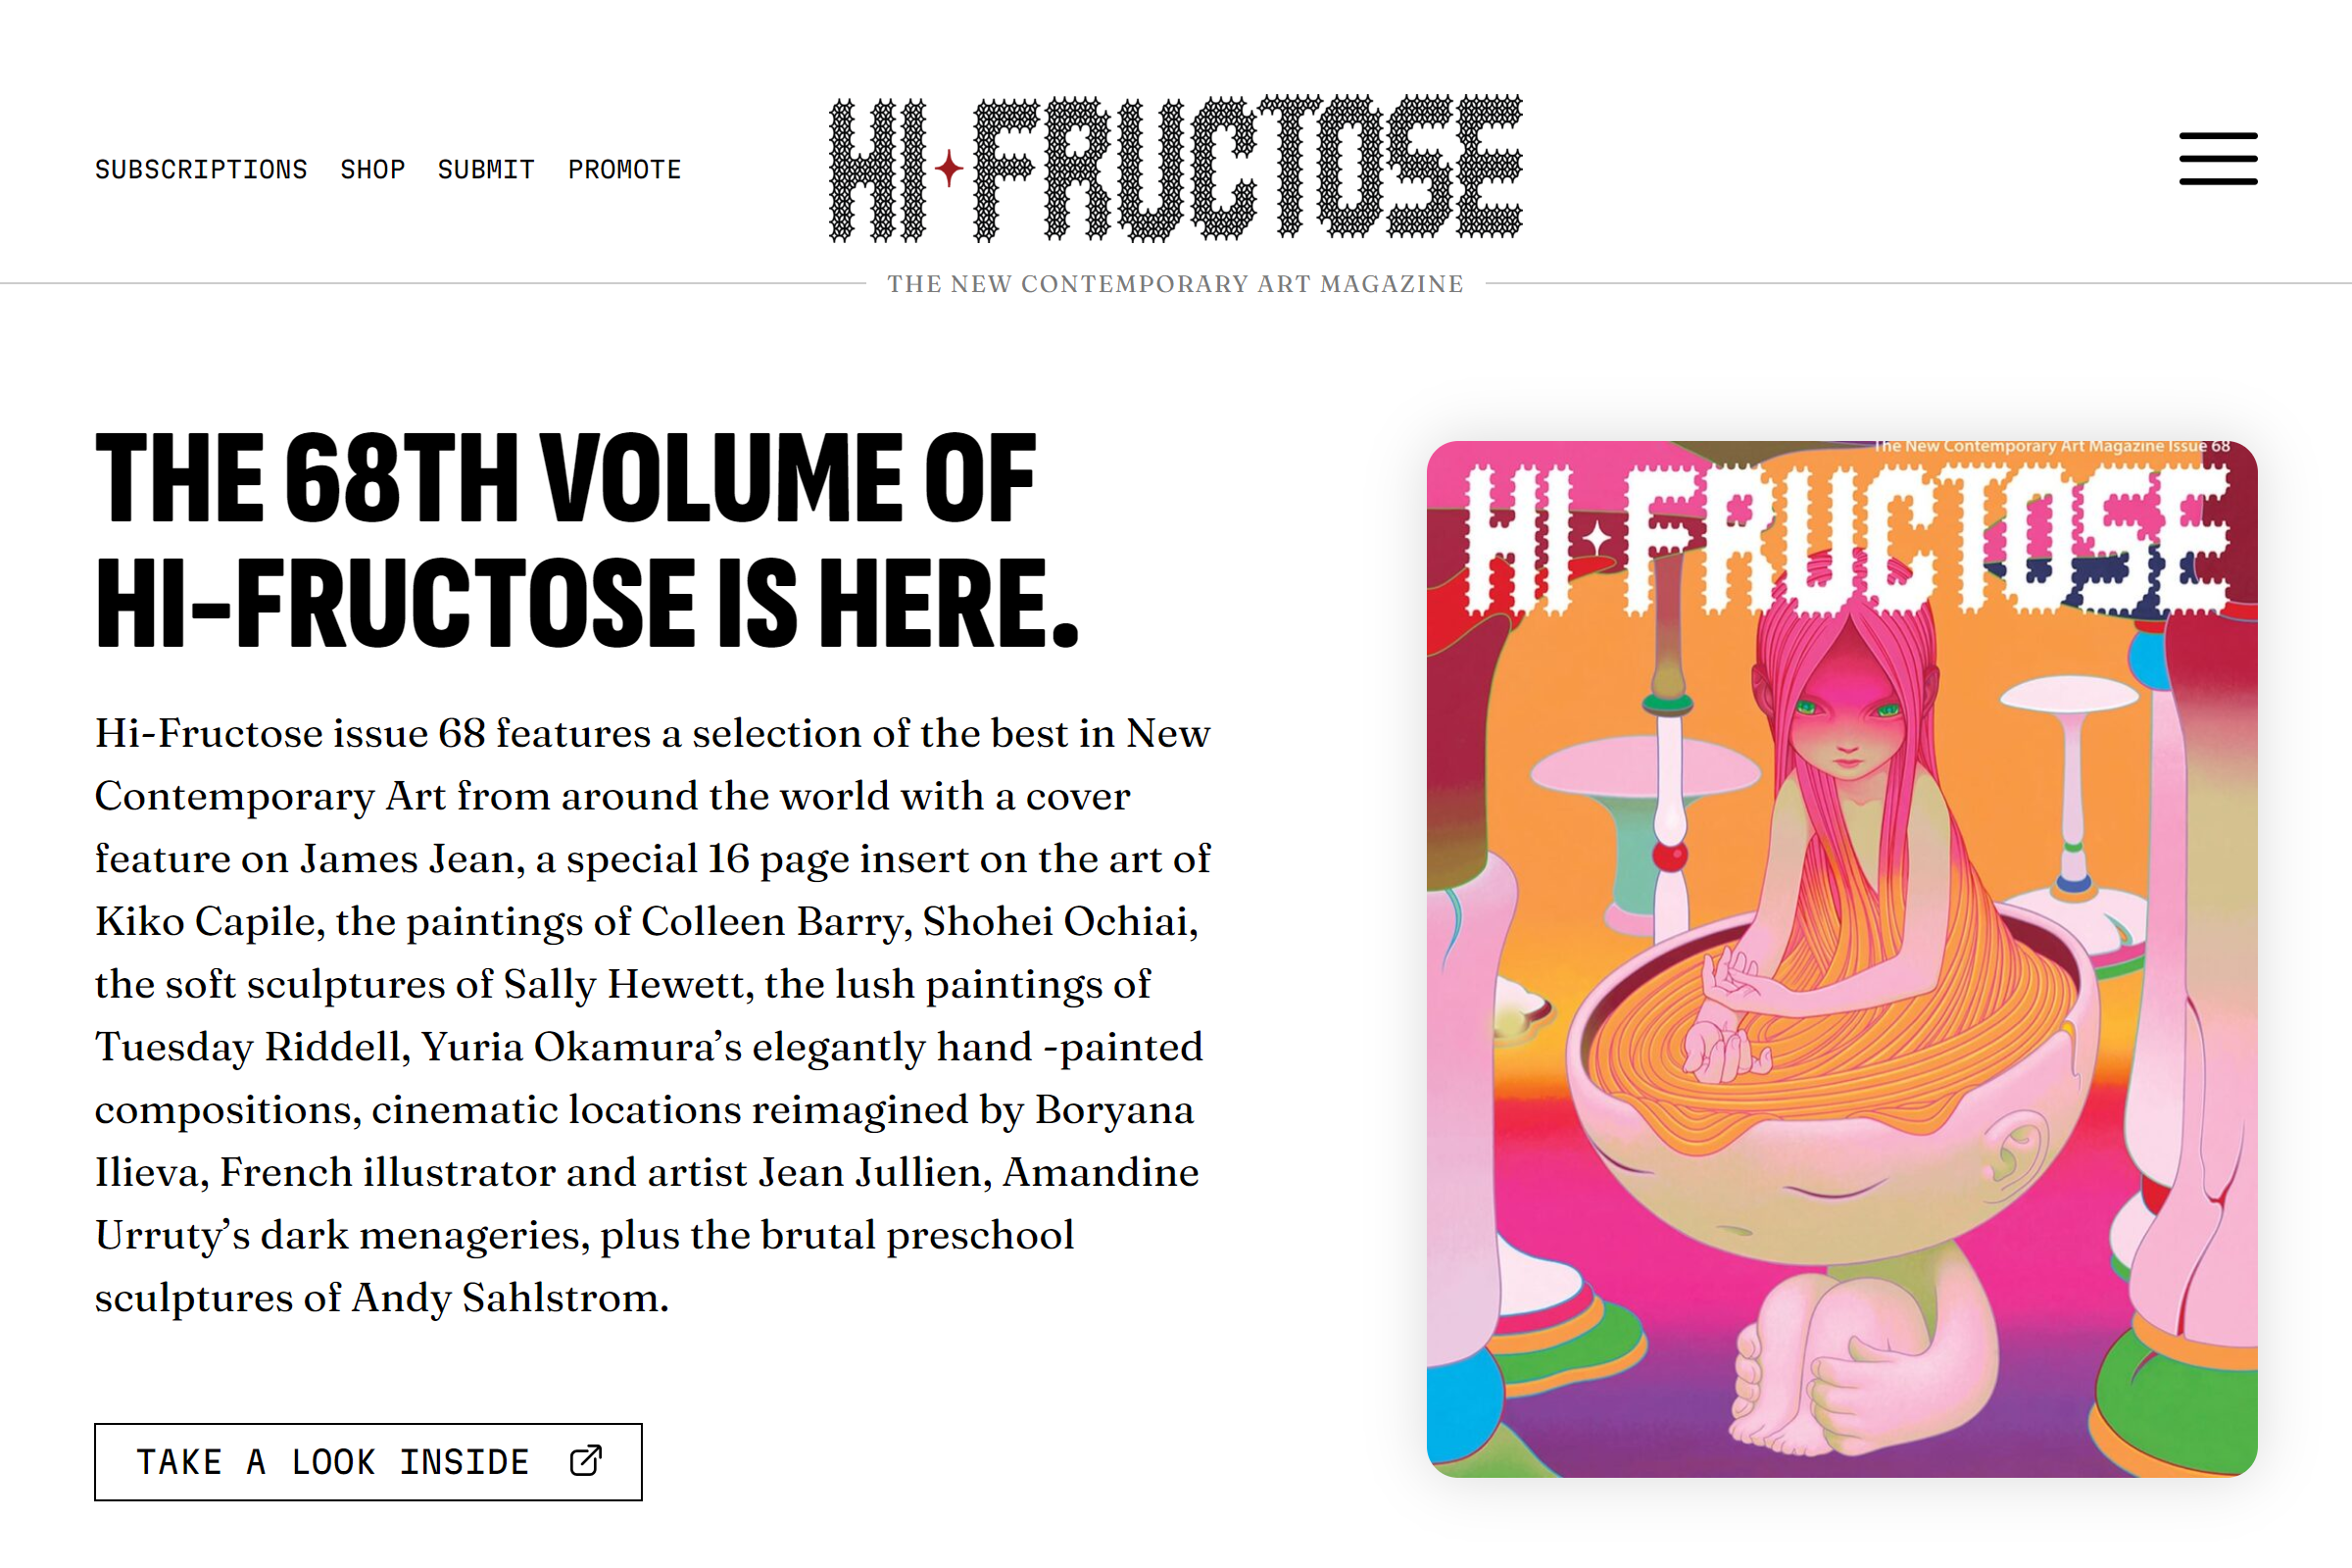 Hi-Fructose art blog